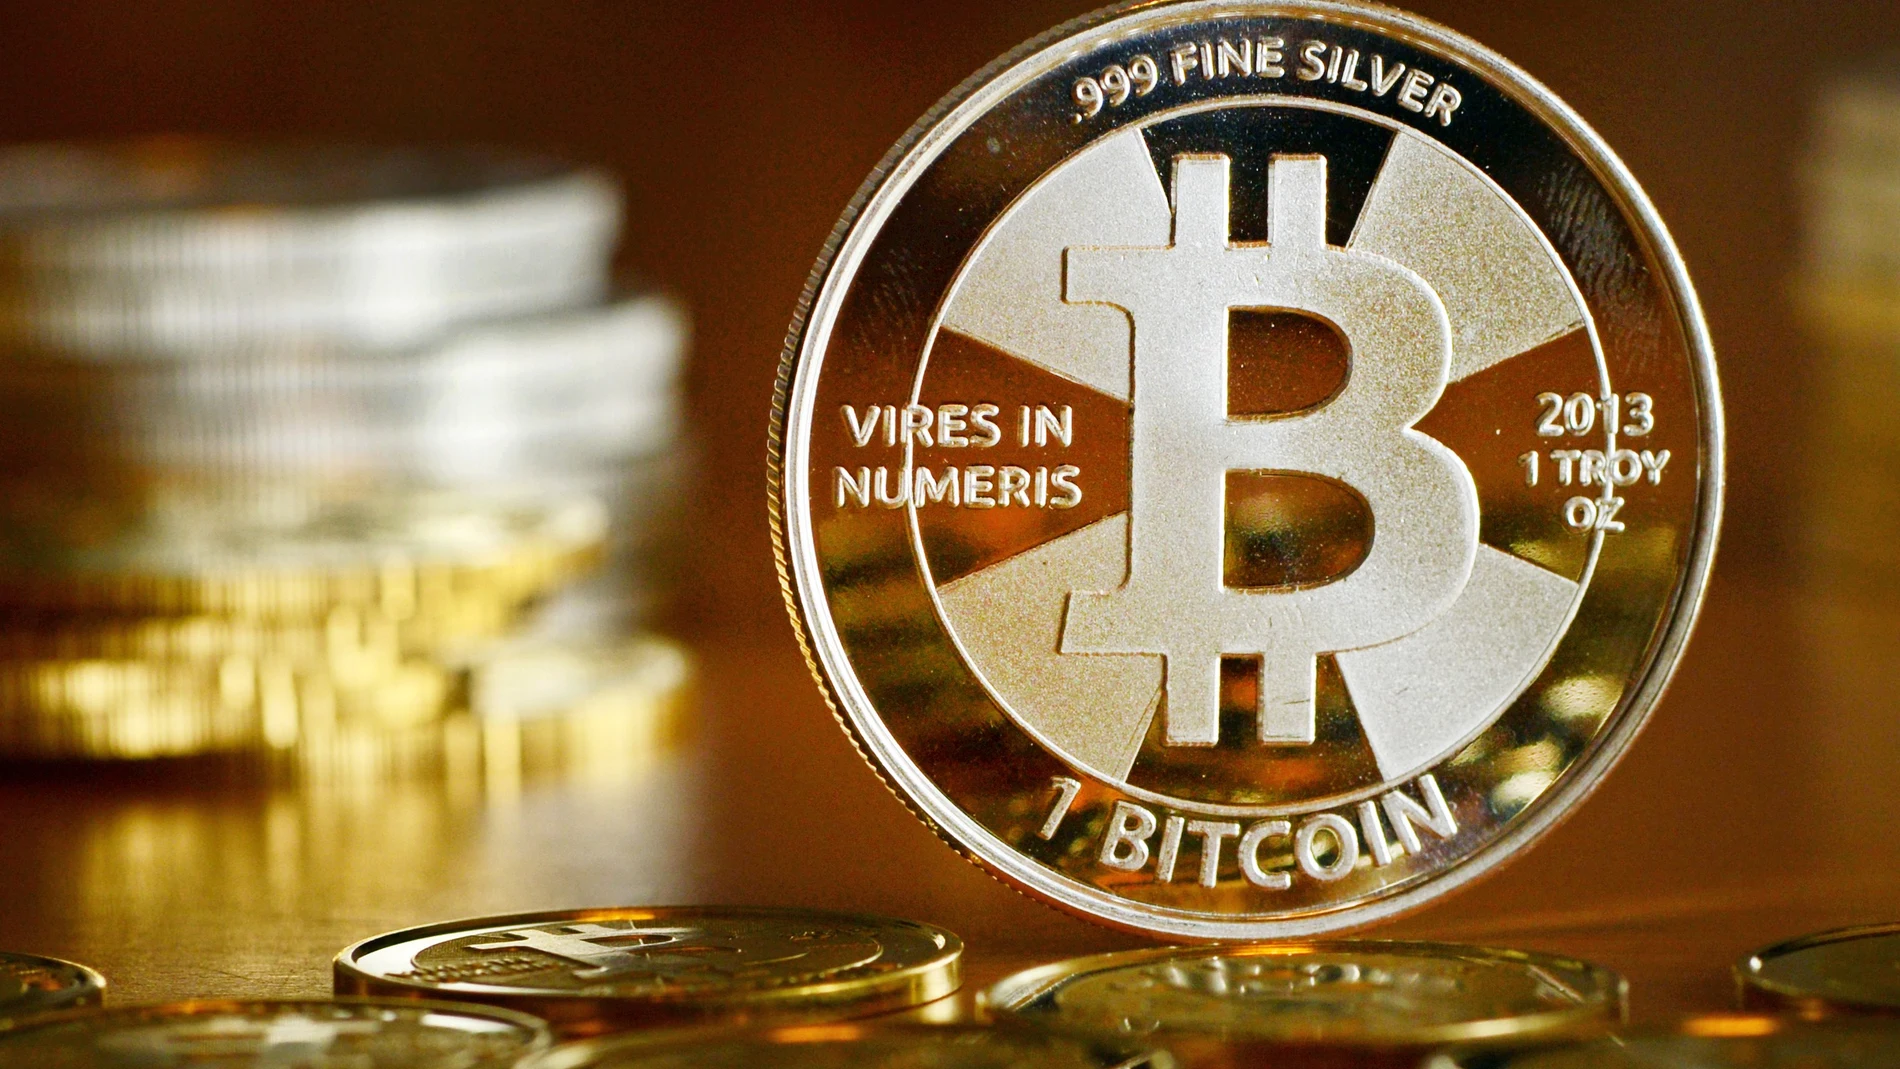 Vista general de una moneda con el logotipo de la criptomoneda Bitcoin en una tienda de monedas